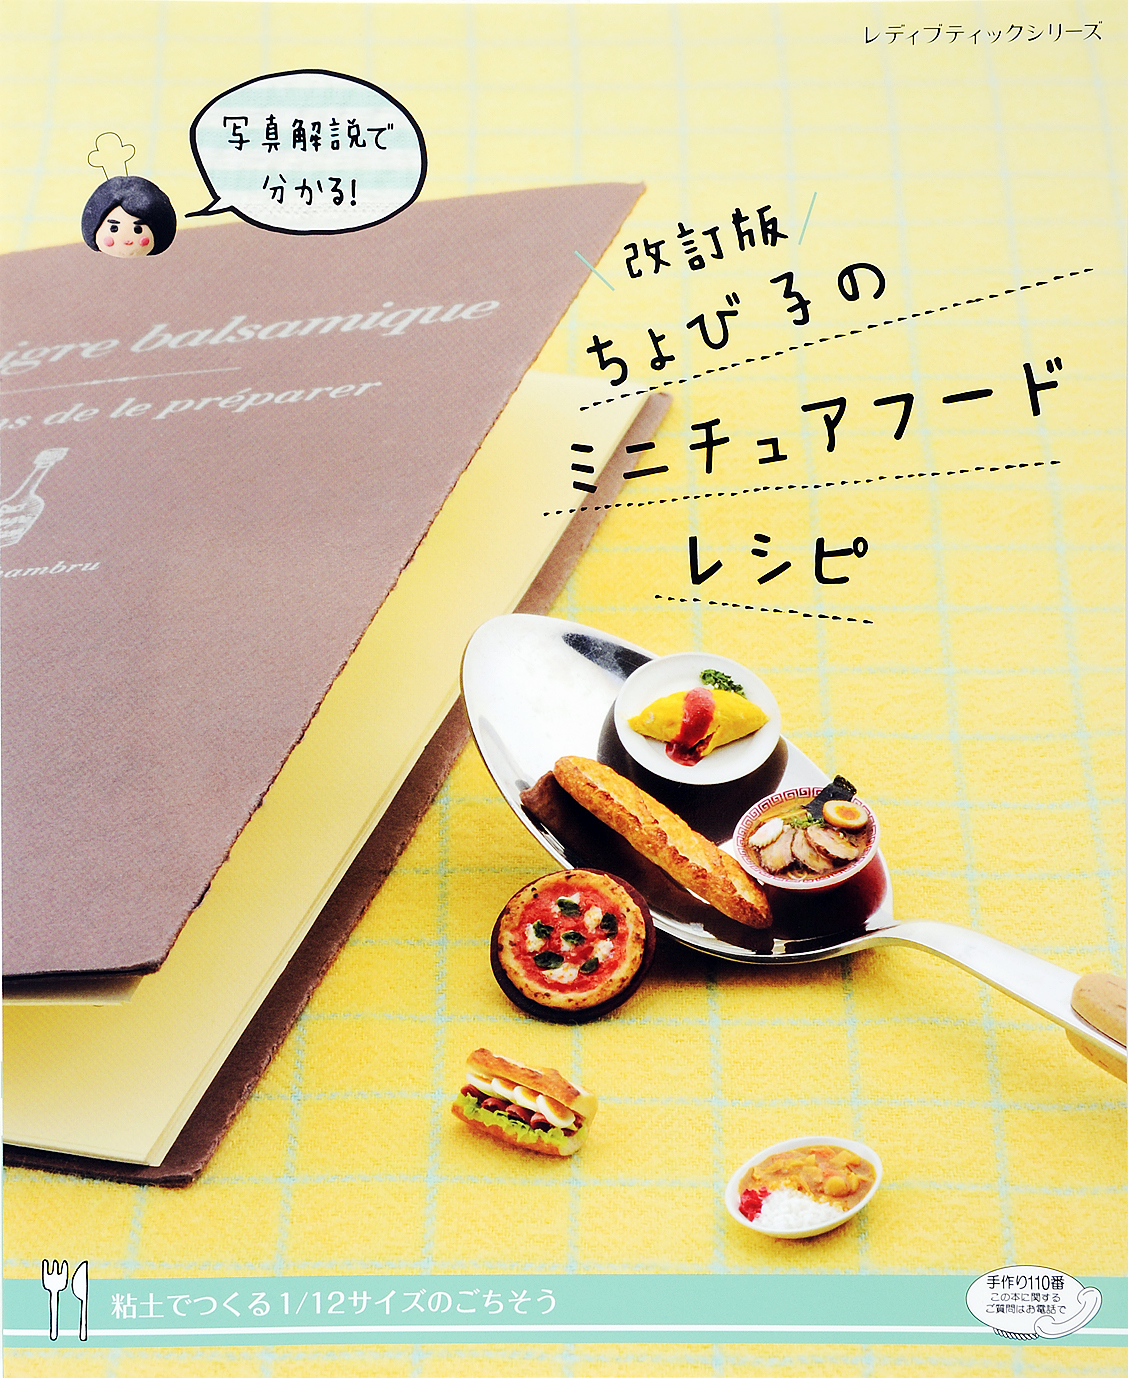 ミニチュアフードbook : ねんどで作る1 6サイズのかわいい食べ物 価格